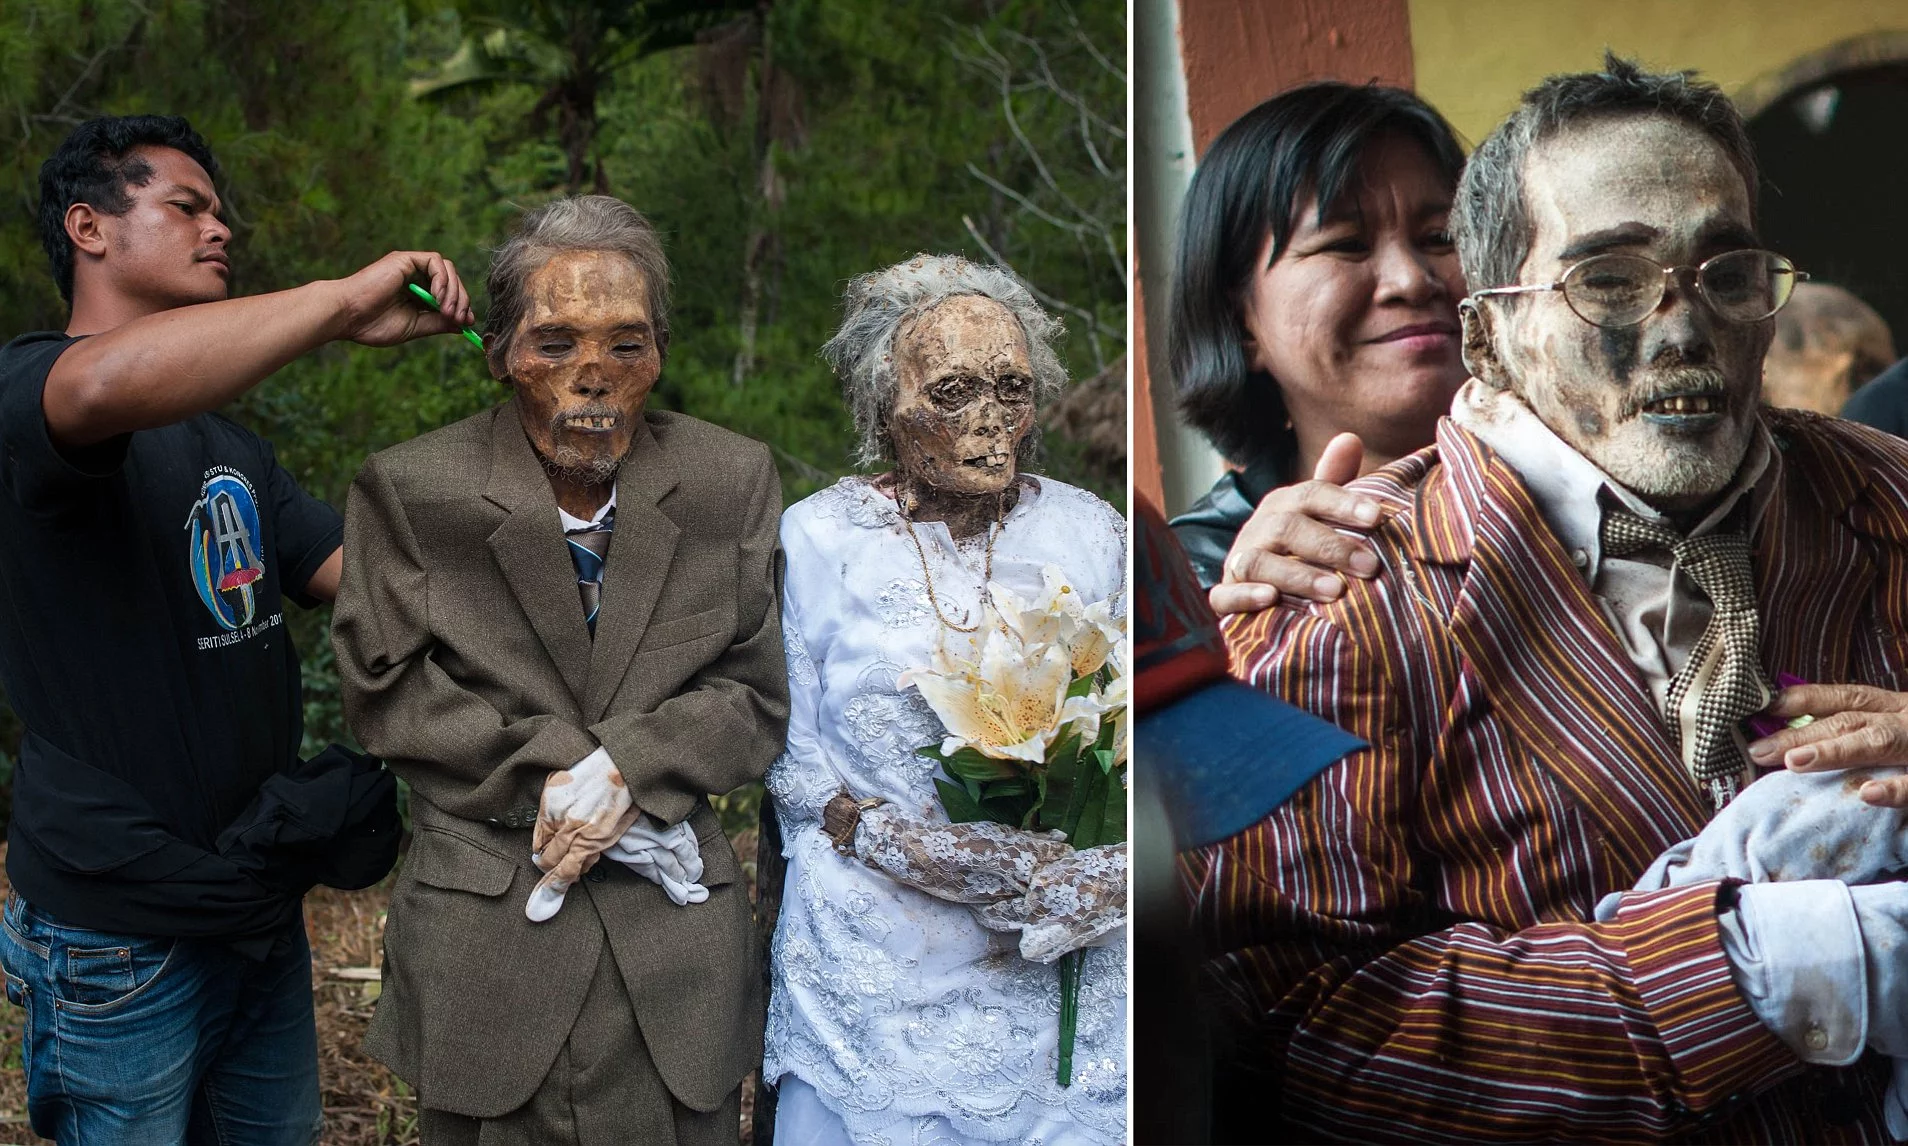 Strange death anniversary culture in Indonesia